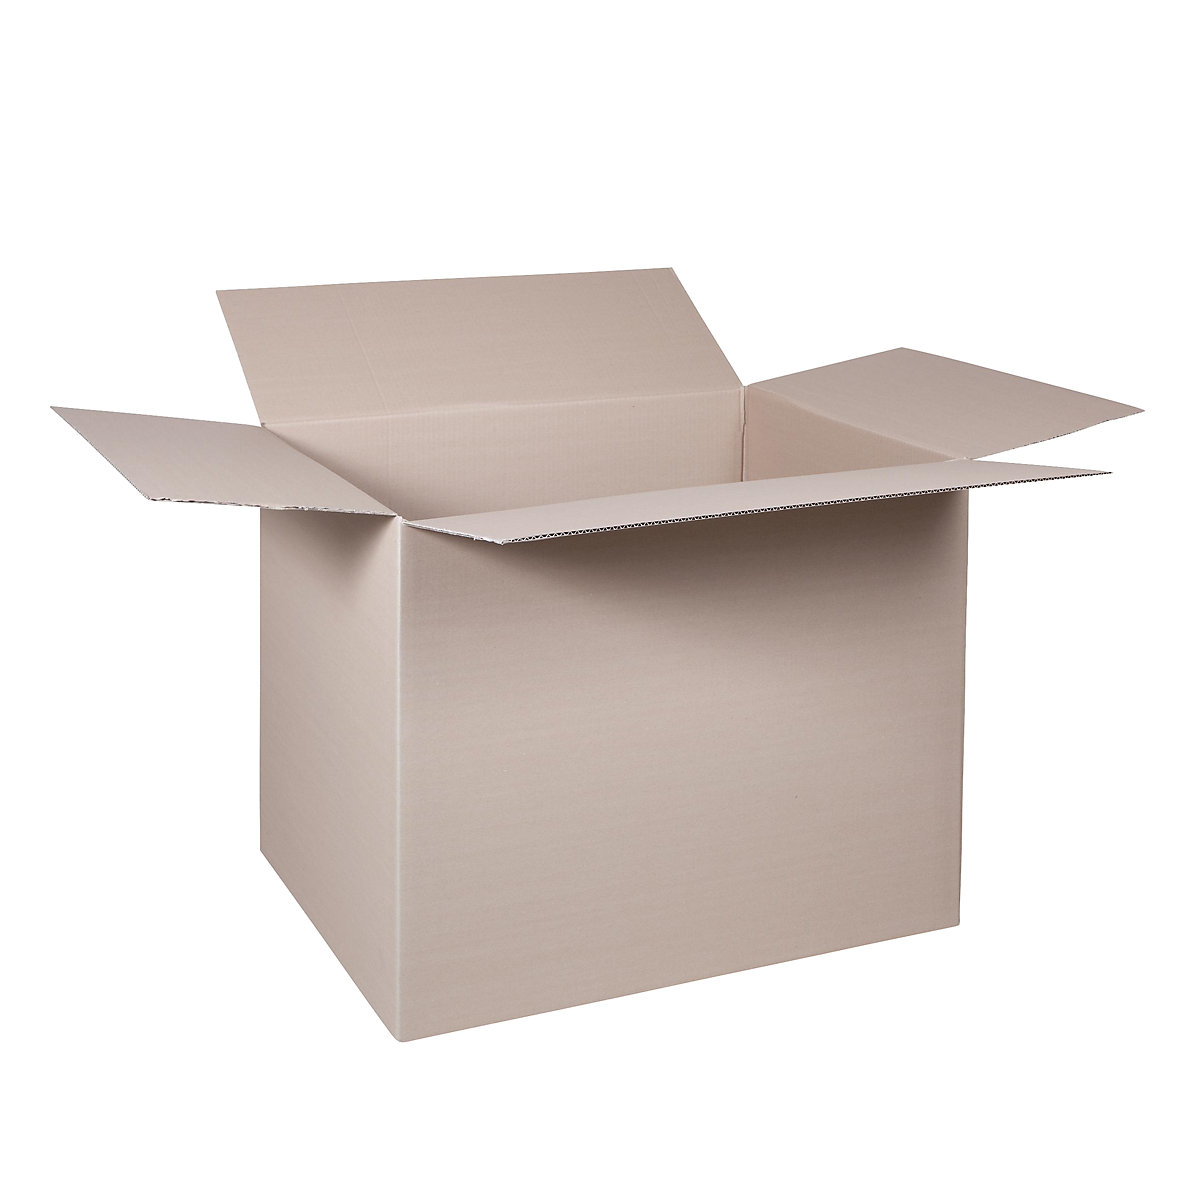 Cutie de carton pliantă, FEFCO 0201, cu 1 strat de carton ondulat, dimensiuni interioare 780 x 580 x 600 mm, amb. 50 buc.-34